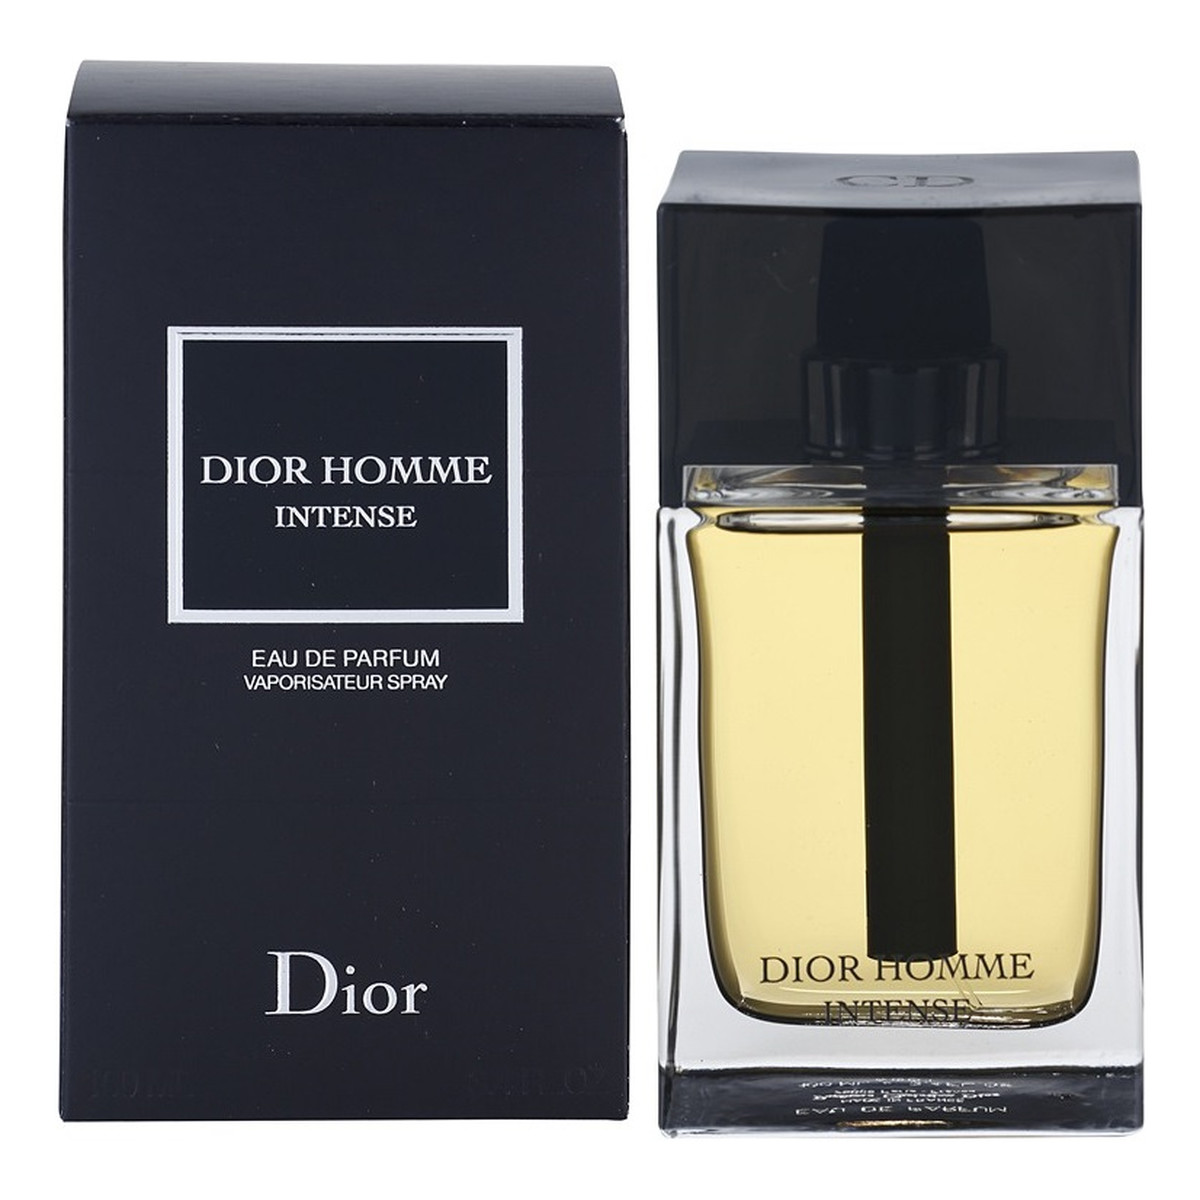 Dior Homme Intense woda perfumowana dla mężczyzn 100ml